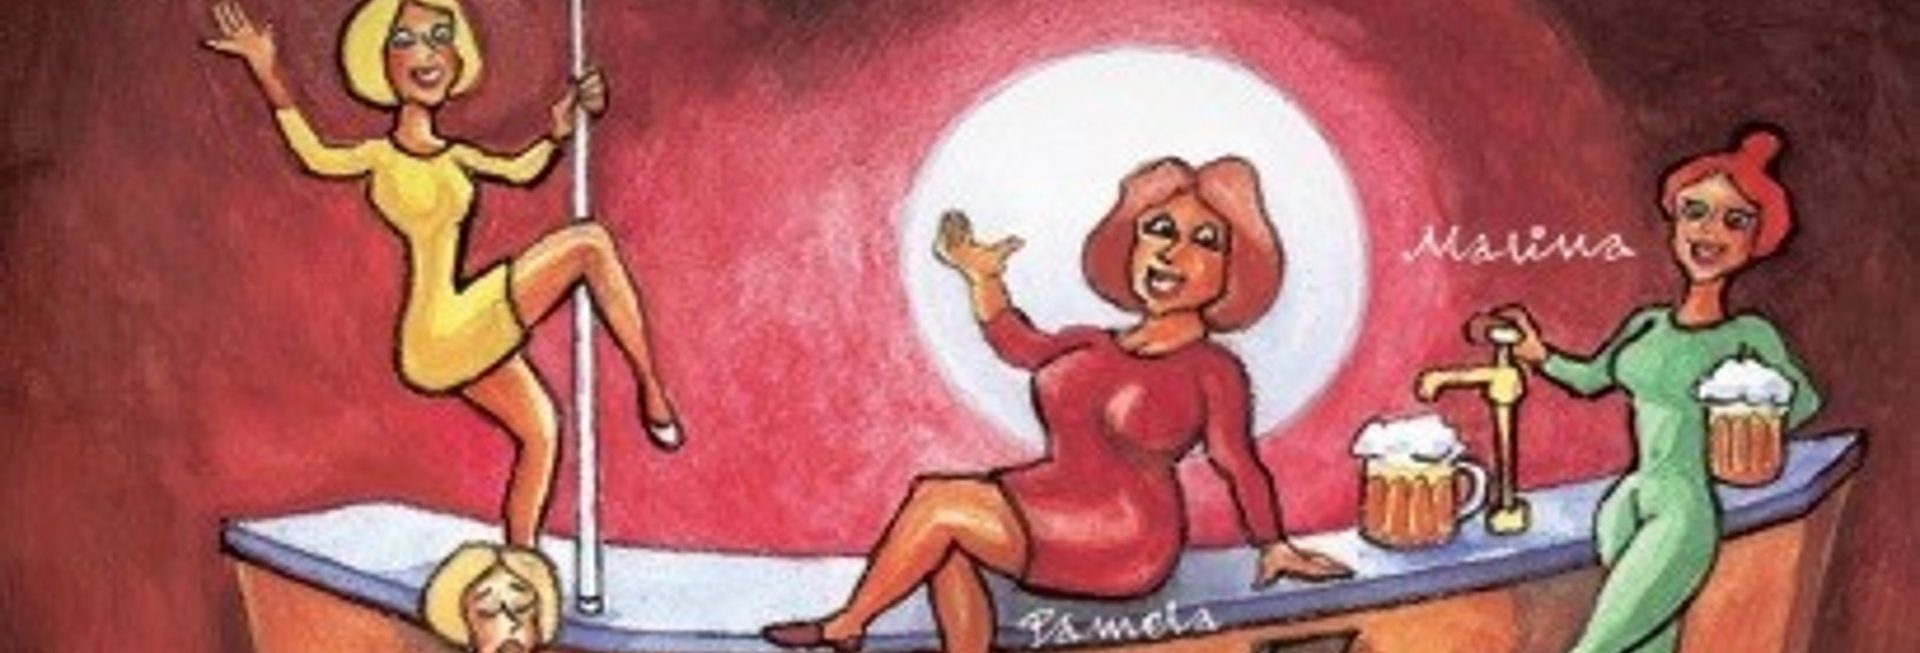 Plakat graficzny - zapraszający na spektakl teatralny Klimaterium 2 czyli menopałzy szał. Na plakacie graficzne postacie oraz wyszczególniona obsada komedii. 